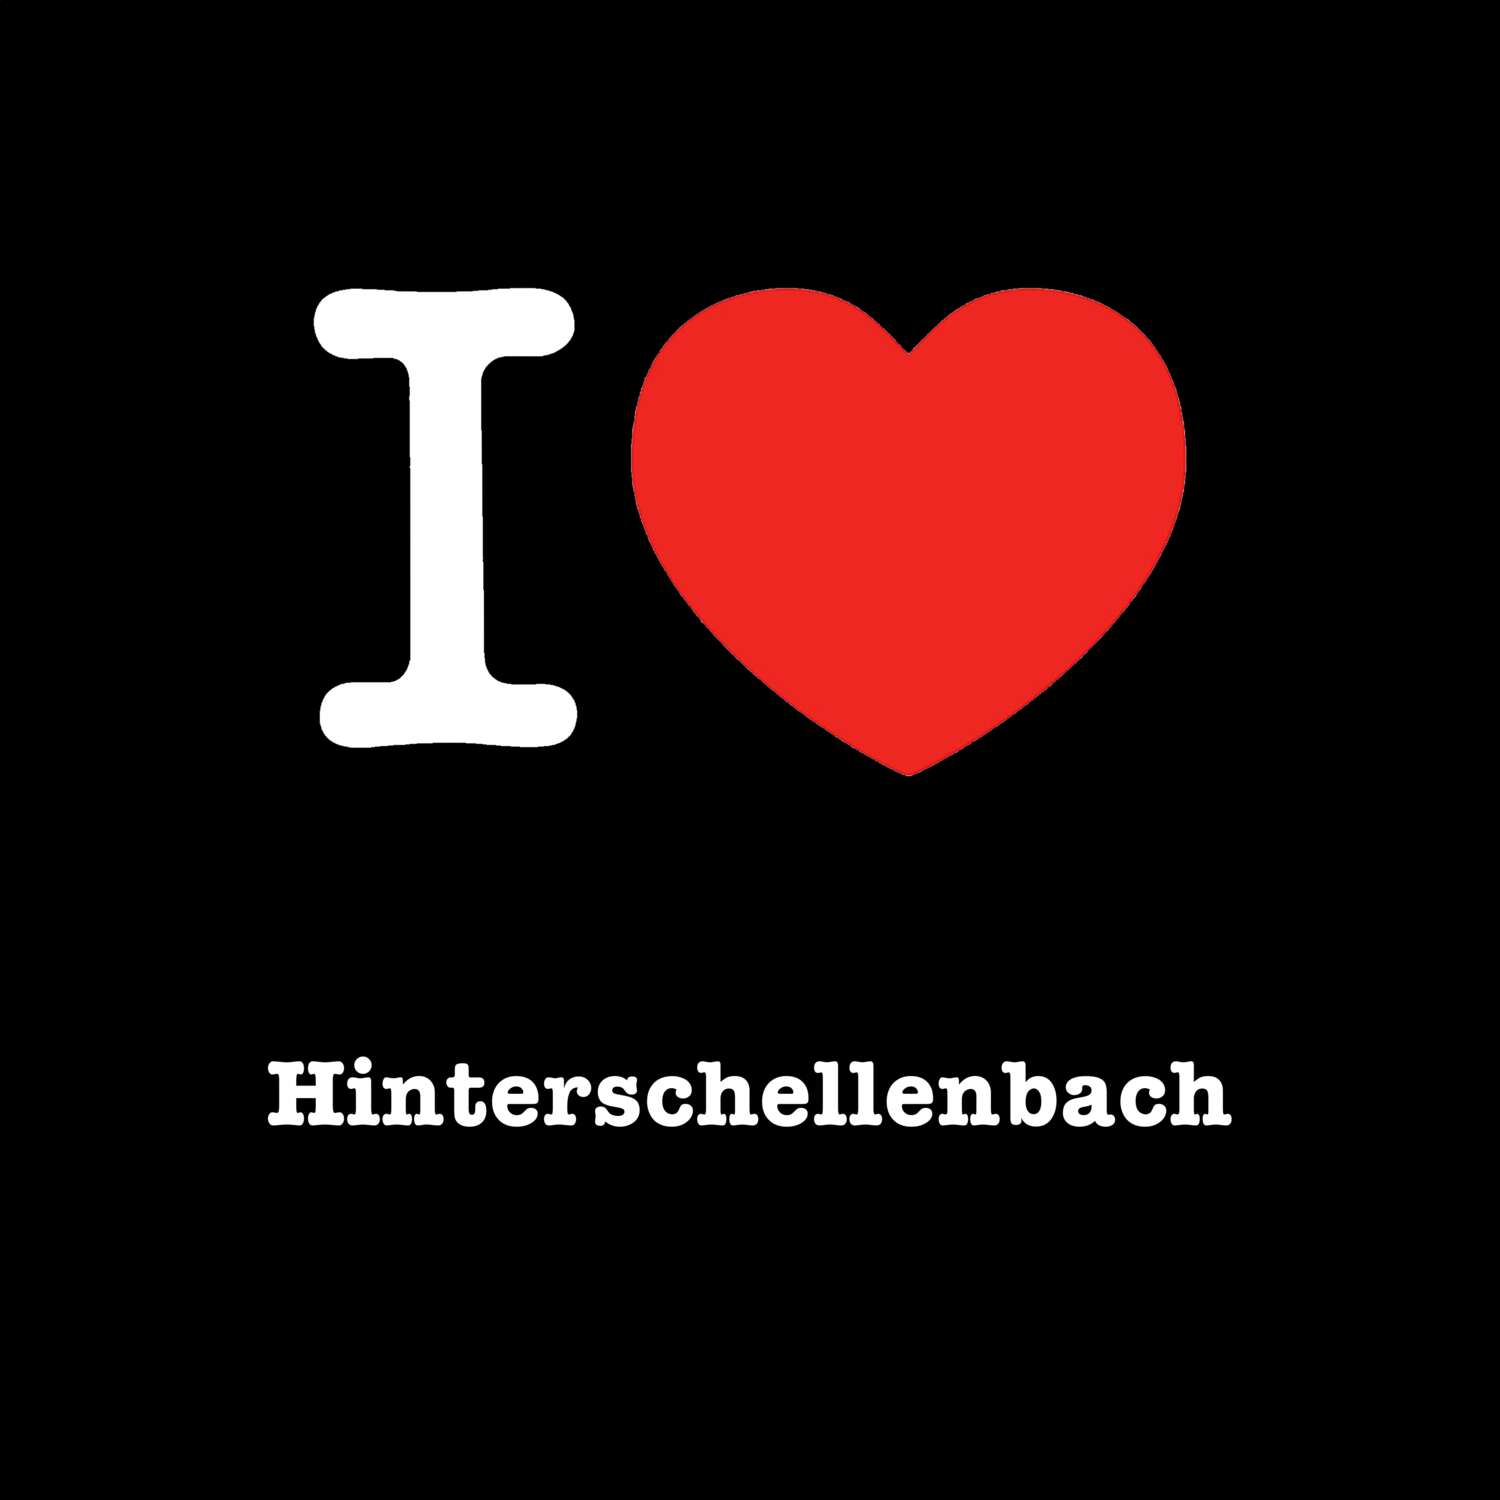 Hinterschellenbach T-Shirt »I love«